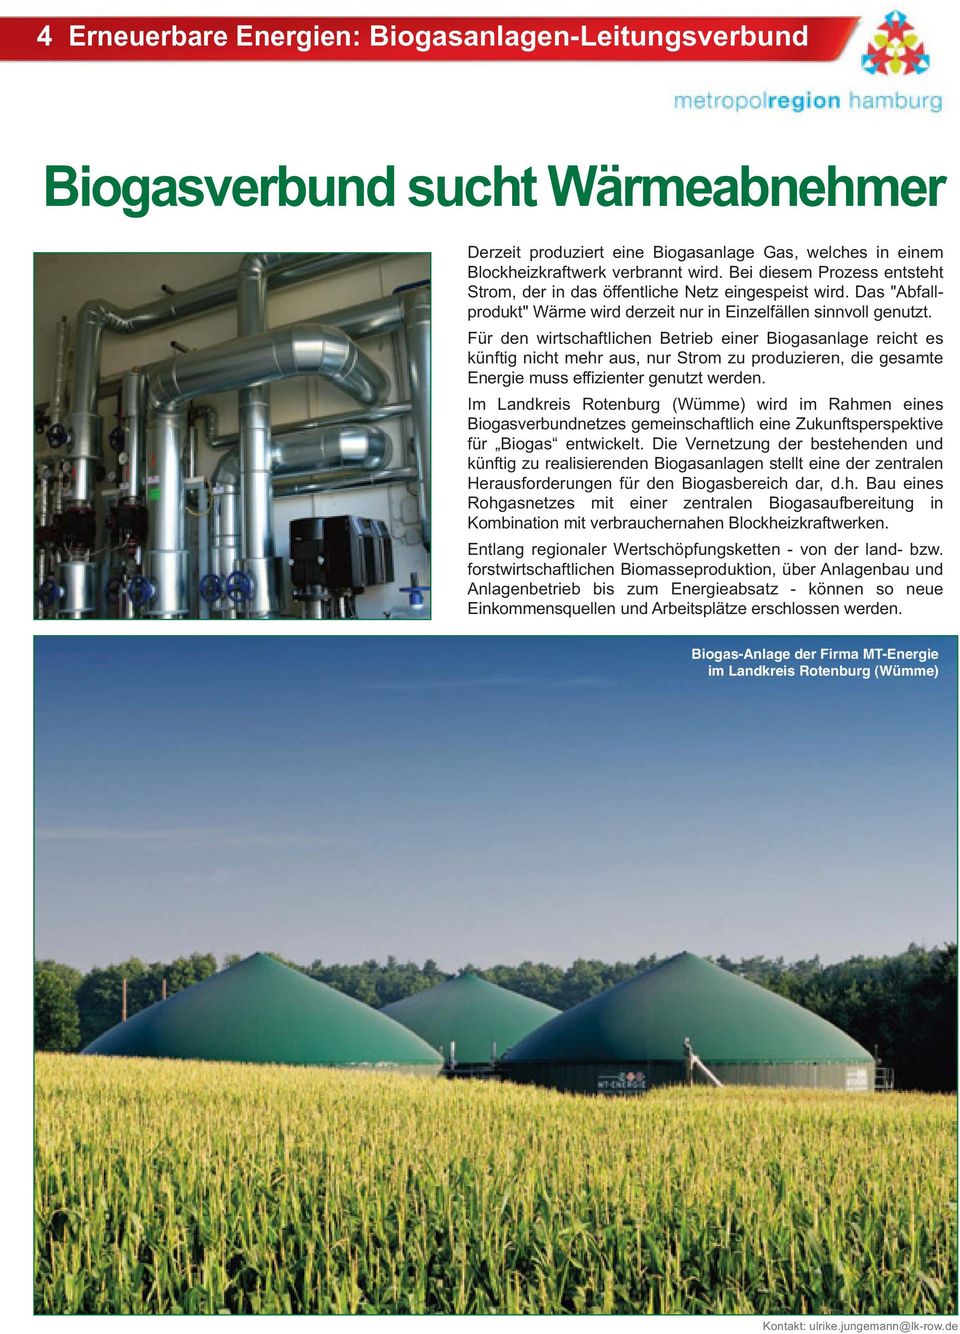 Für den wirtschaftlichen Betrieb einer Biogasanlage reicht es künftig nicht mehr aus, nur Strom zu produzieren, die gesamte Energie muss effizienter genutzt werden.